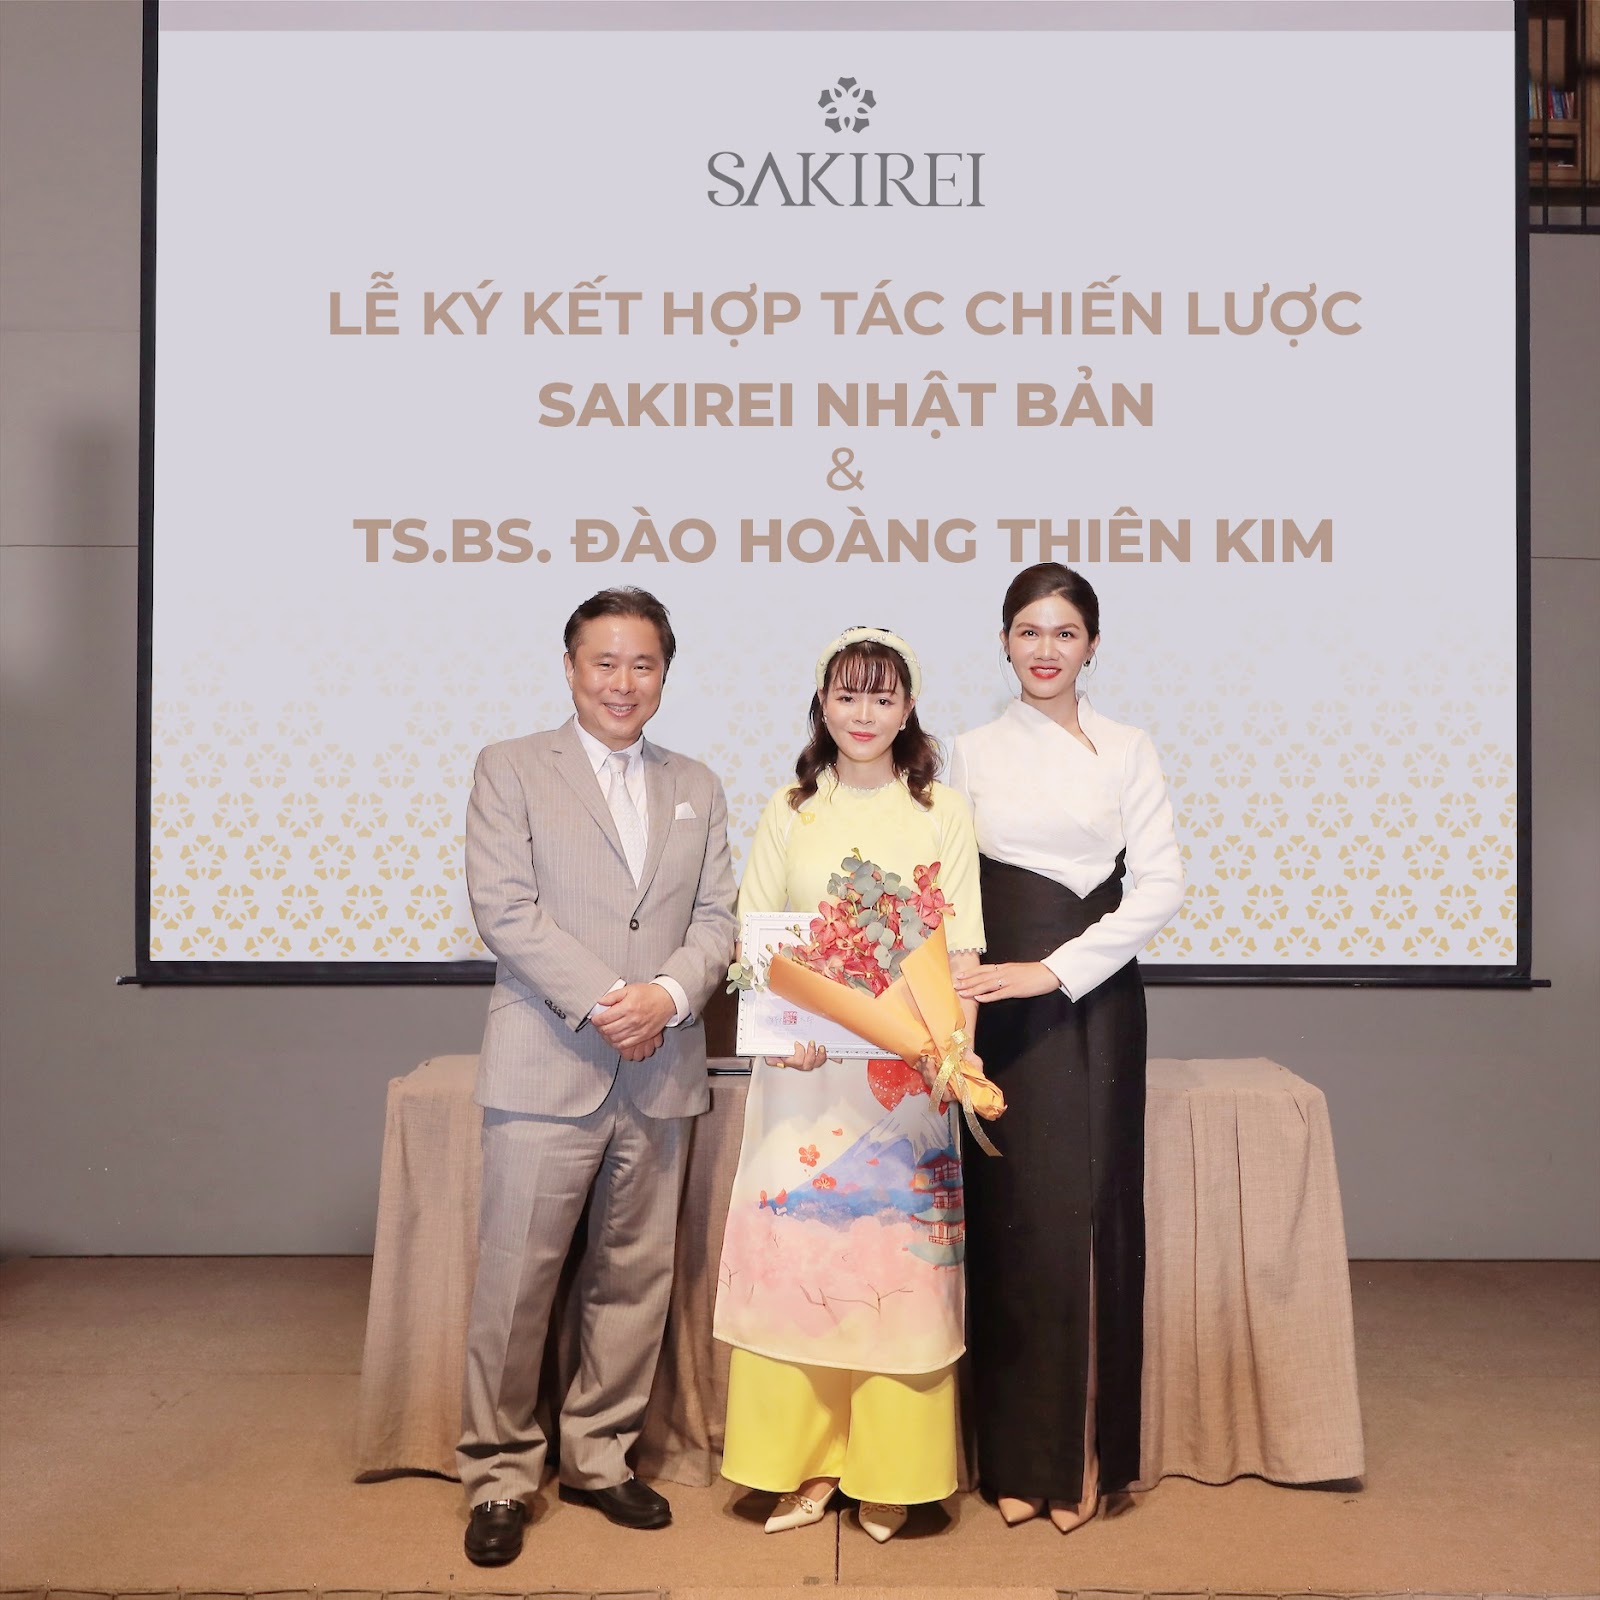 Tiến sĩ - Bác sĩ Đào Hoàng Thiên Kim (giữa) chụp ảnh cùng ông Kentaro Nomura - Đại diện Sakirei Nhật Bản và bà Trương Ái Hân - CEO Sakura Beauty Group.